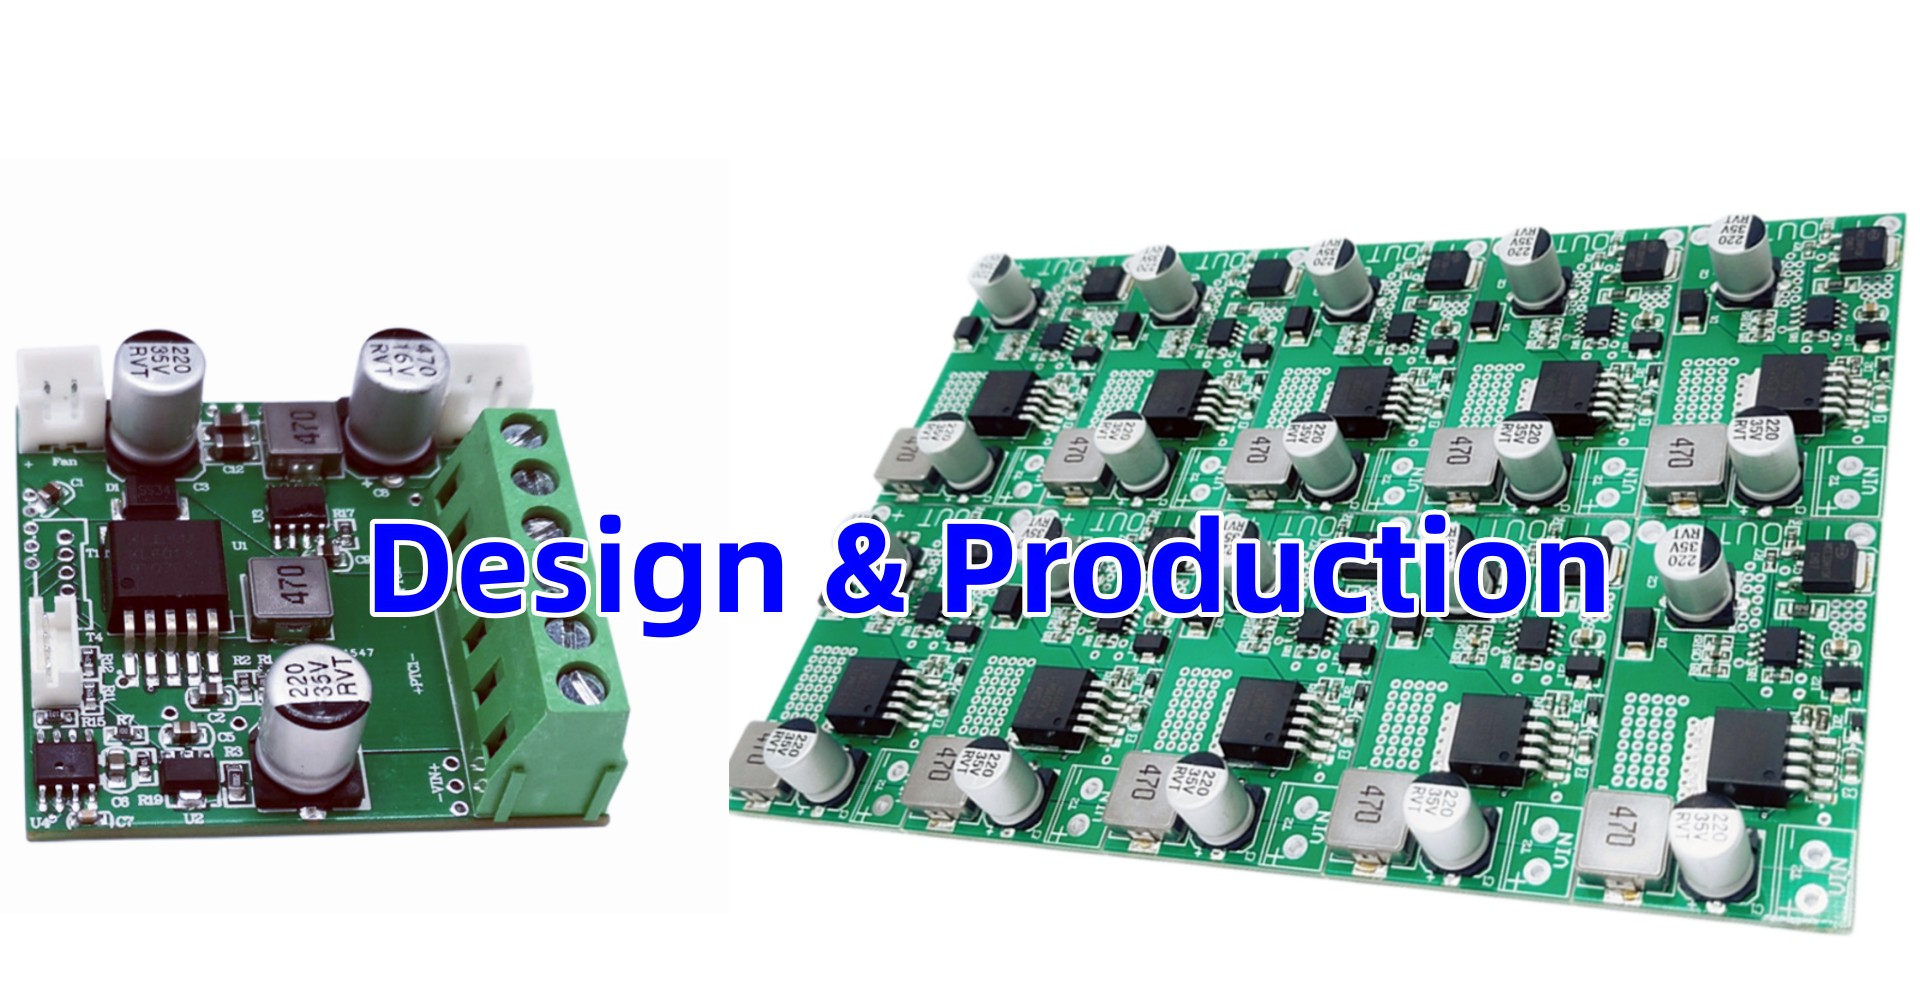 Design &Production 